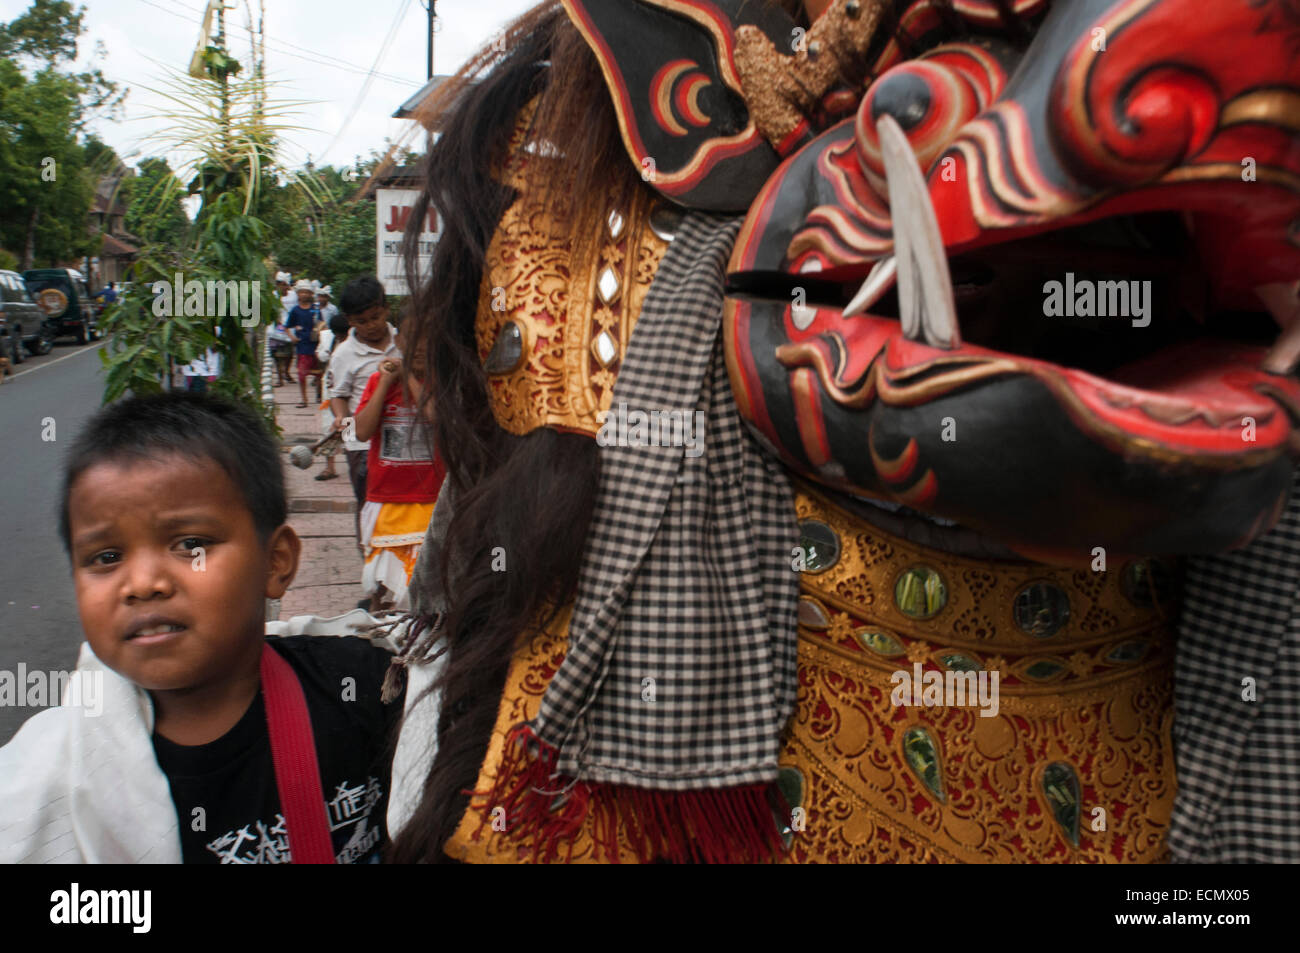 Varios jóvenes reproducir música y dragón disfrazados por las calles de Ubud, durante la celebración de Galungan. Festival Galungan, la más importante de Bali, simboliza la victoria de Drama (virtud) sobre Adharma (mal). Durante los días que el último desfile balinés celebraciones en toda la isla, adornado con largas varas de bambú (penjor) decorada con mazorcas de maíz, coco, tortas de arroz y pastelitos, así como telas blancas o amarillas, frutas, flores. Este festival se celebra cada 210 días. Ubud. Bali. Foto de stock